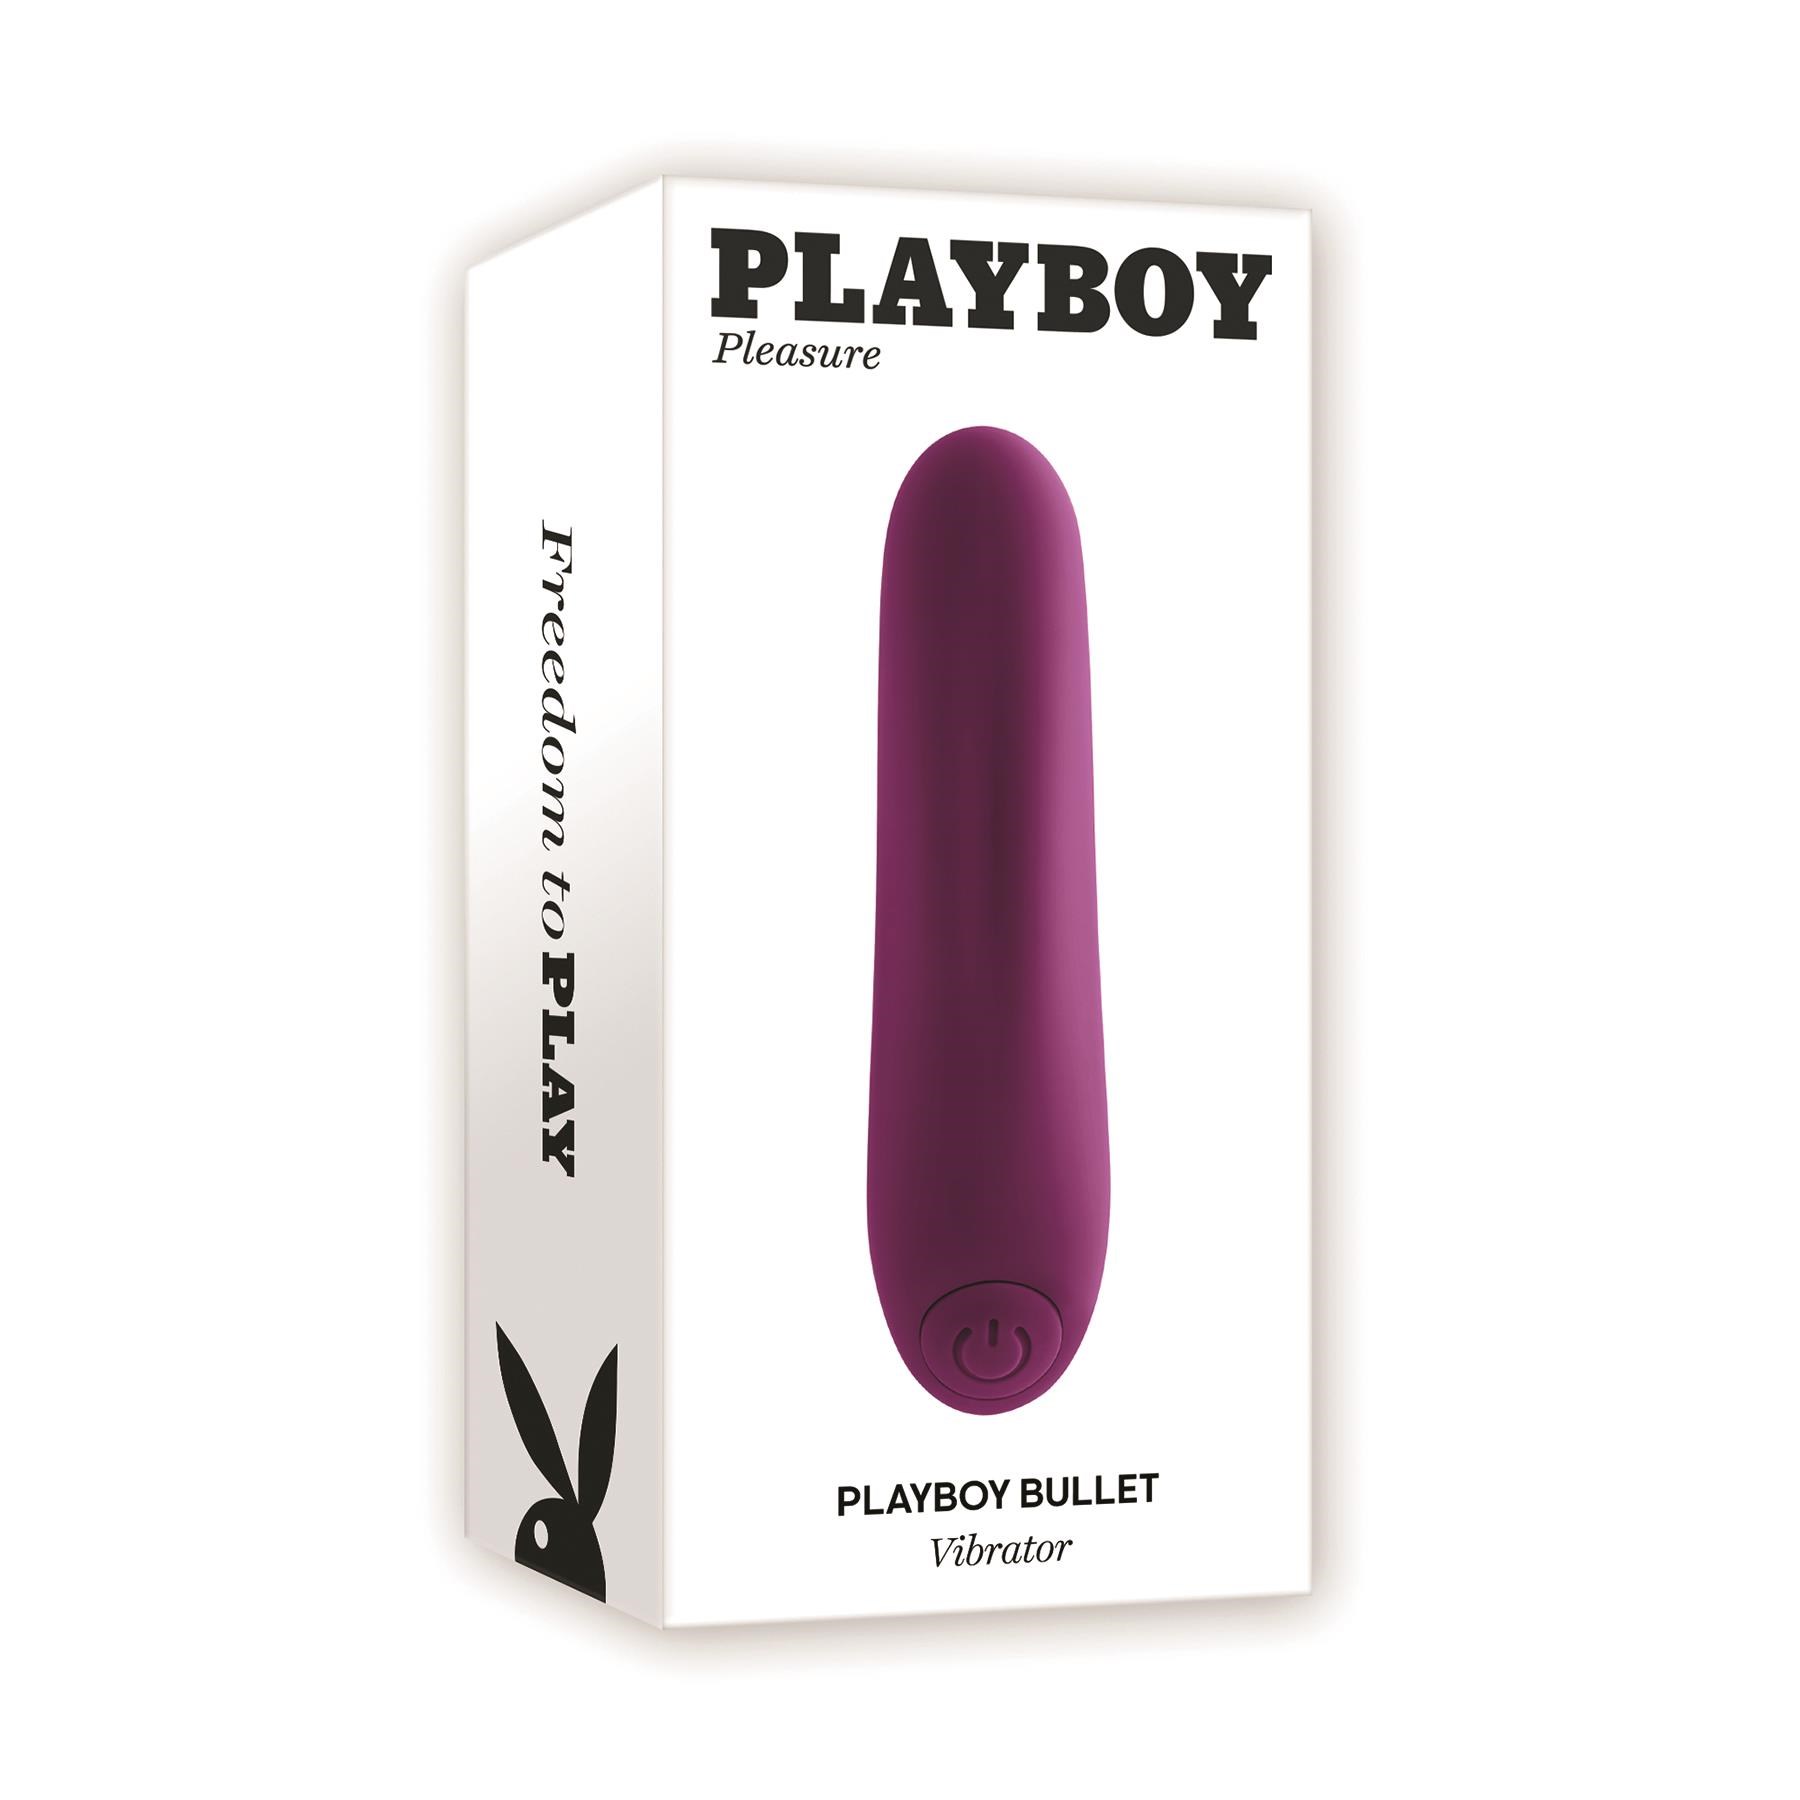 Playboy Pleasure Bullet Vibrator - Packaging